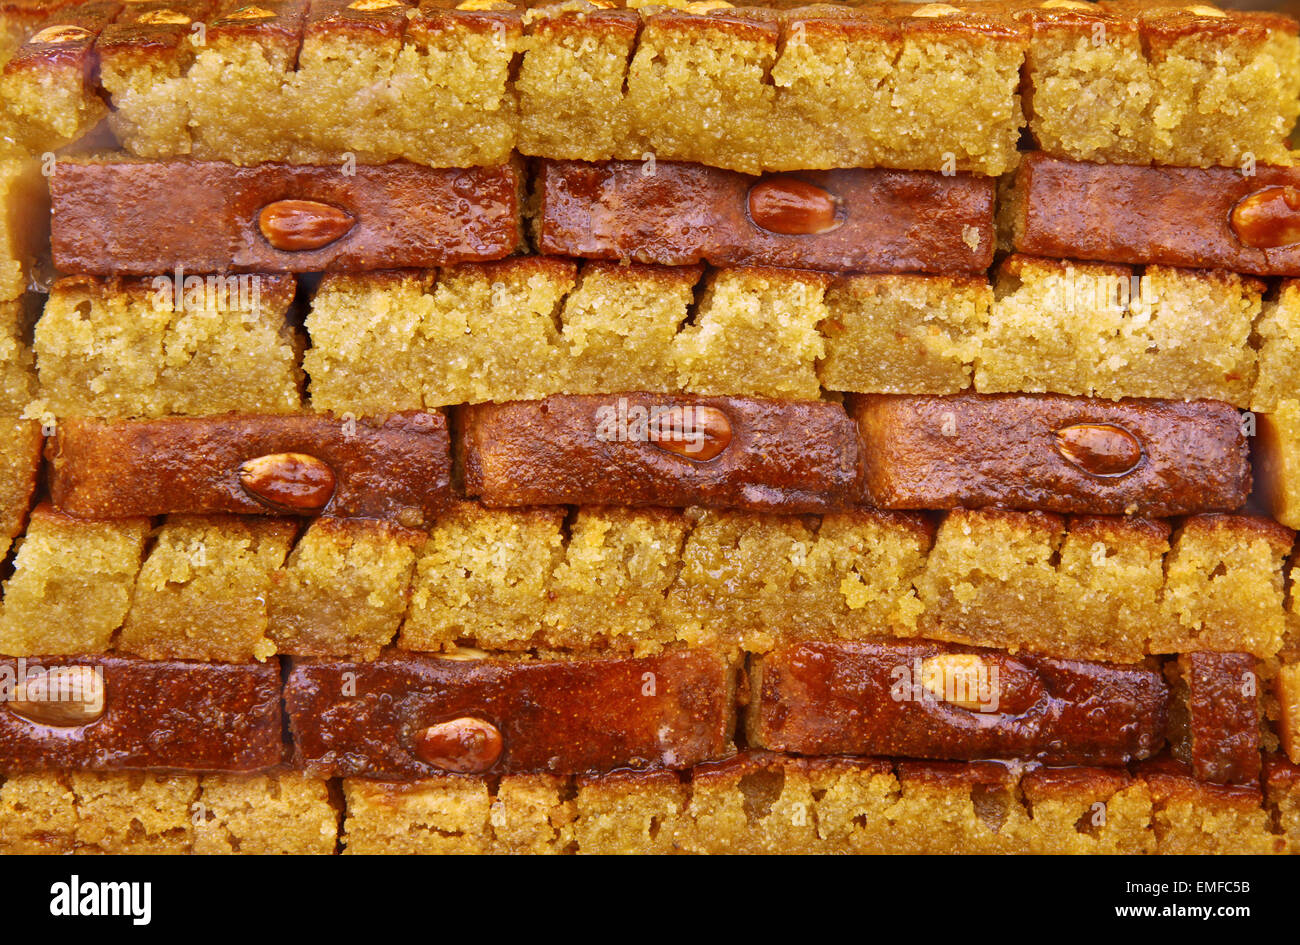 Baklava turc traditionnel (desserts sucrés faits de pâte fine, noix et miel) Banque D'Images